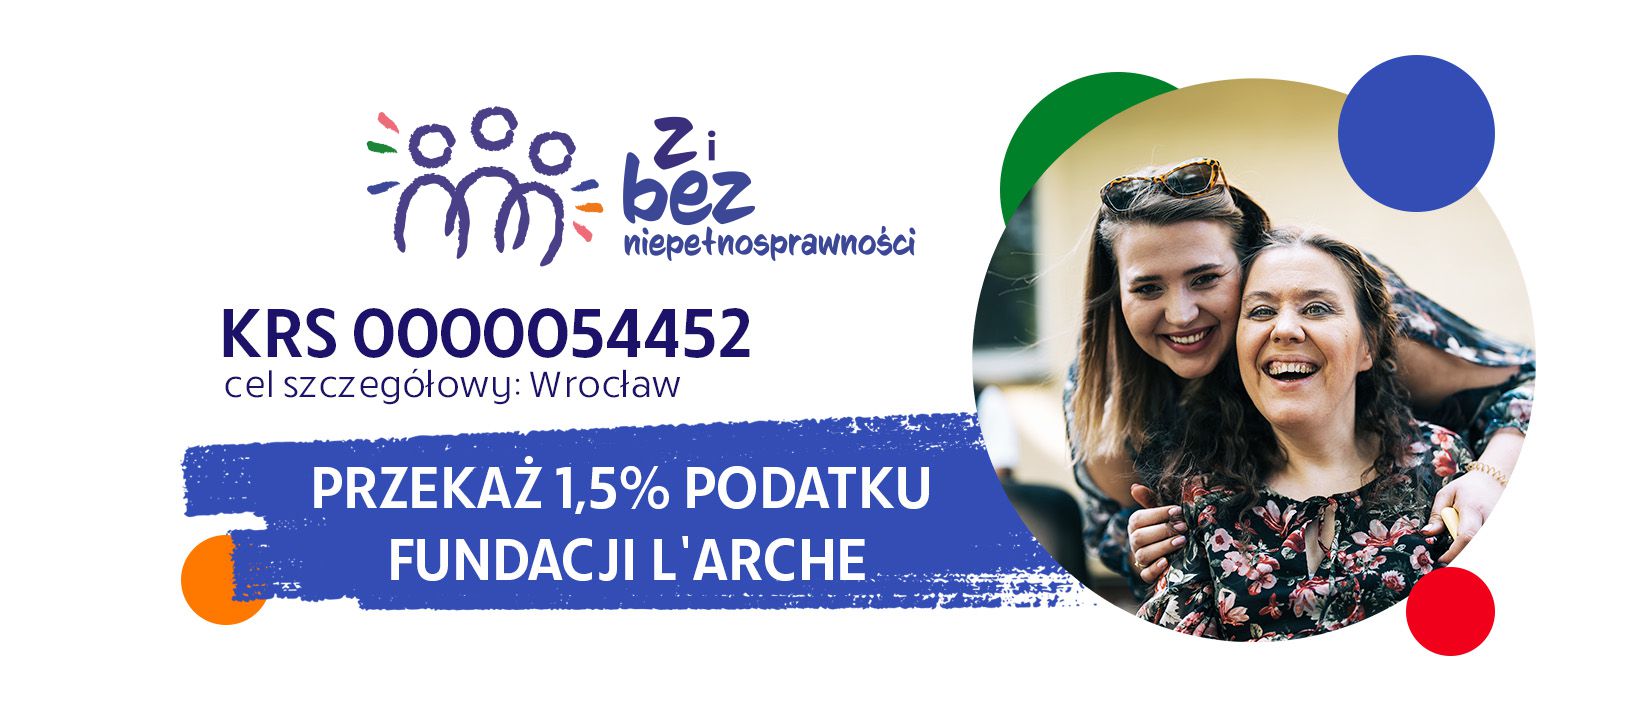 Przekaż 1,5% Fundacji L'Arche KRS: 0000054452 Cel szczegółowy: Wrocław